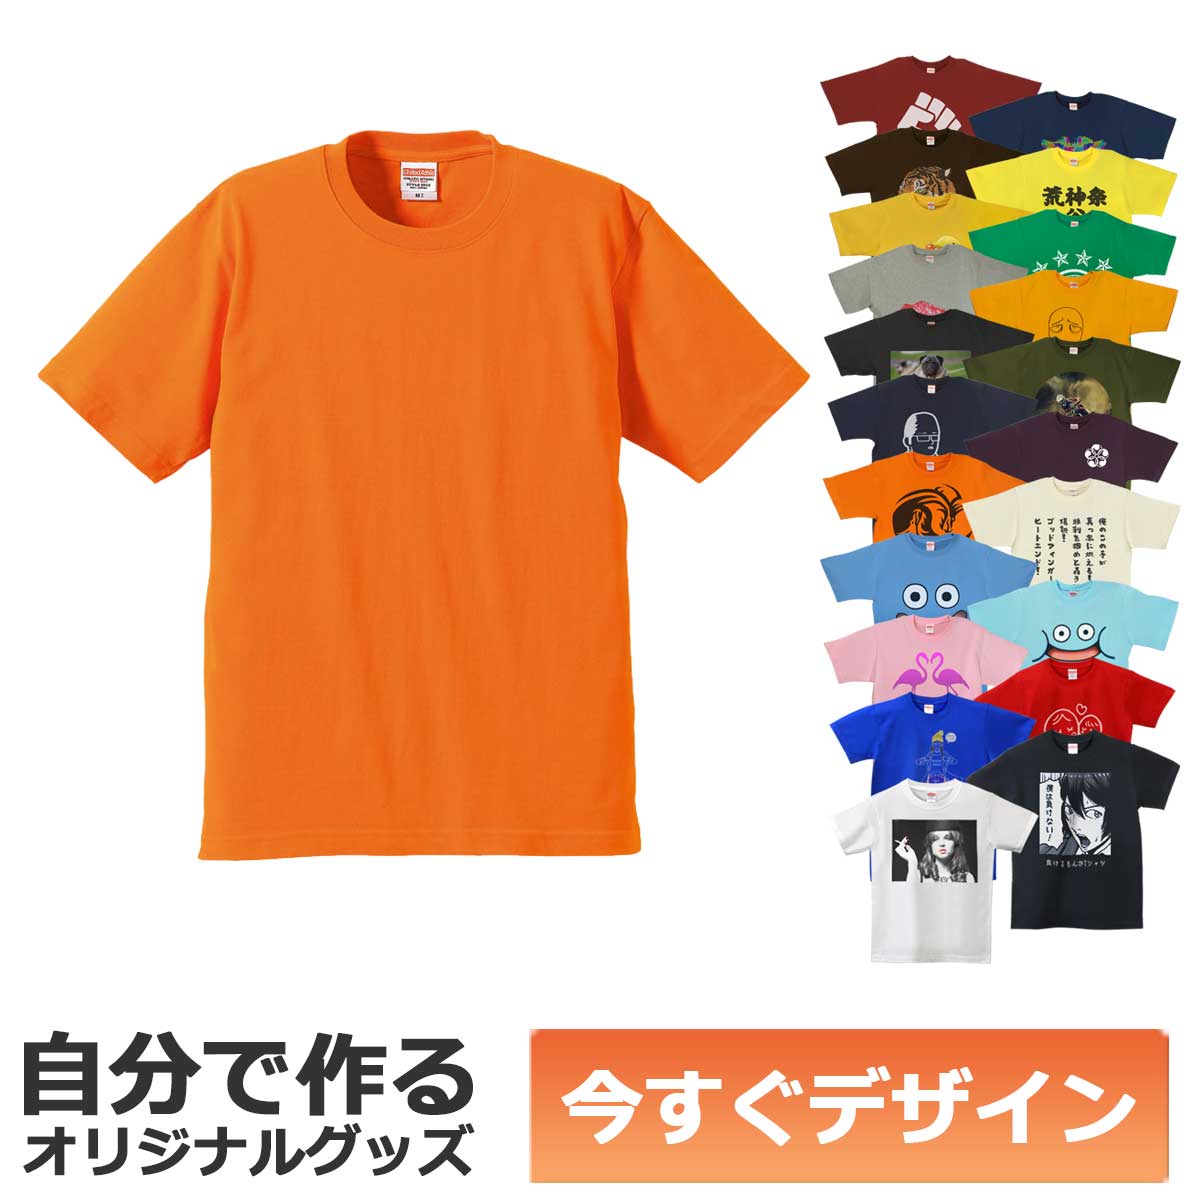 1枚から作れる 自分でデザイン オリジナル Tシャツ オレンジ 6.2oz プレミアム メール便可